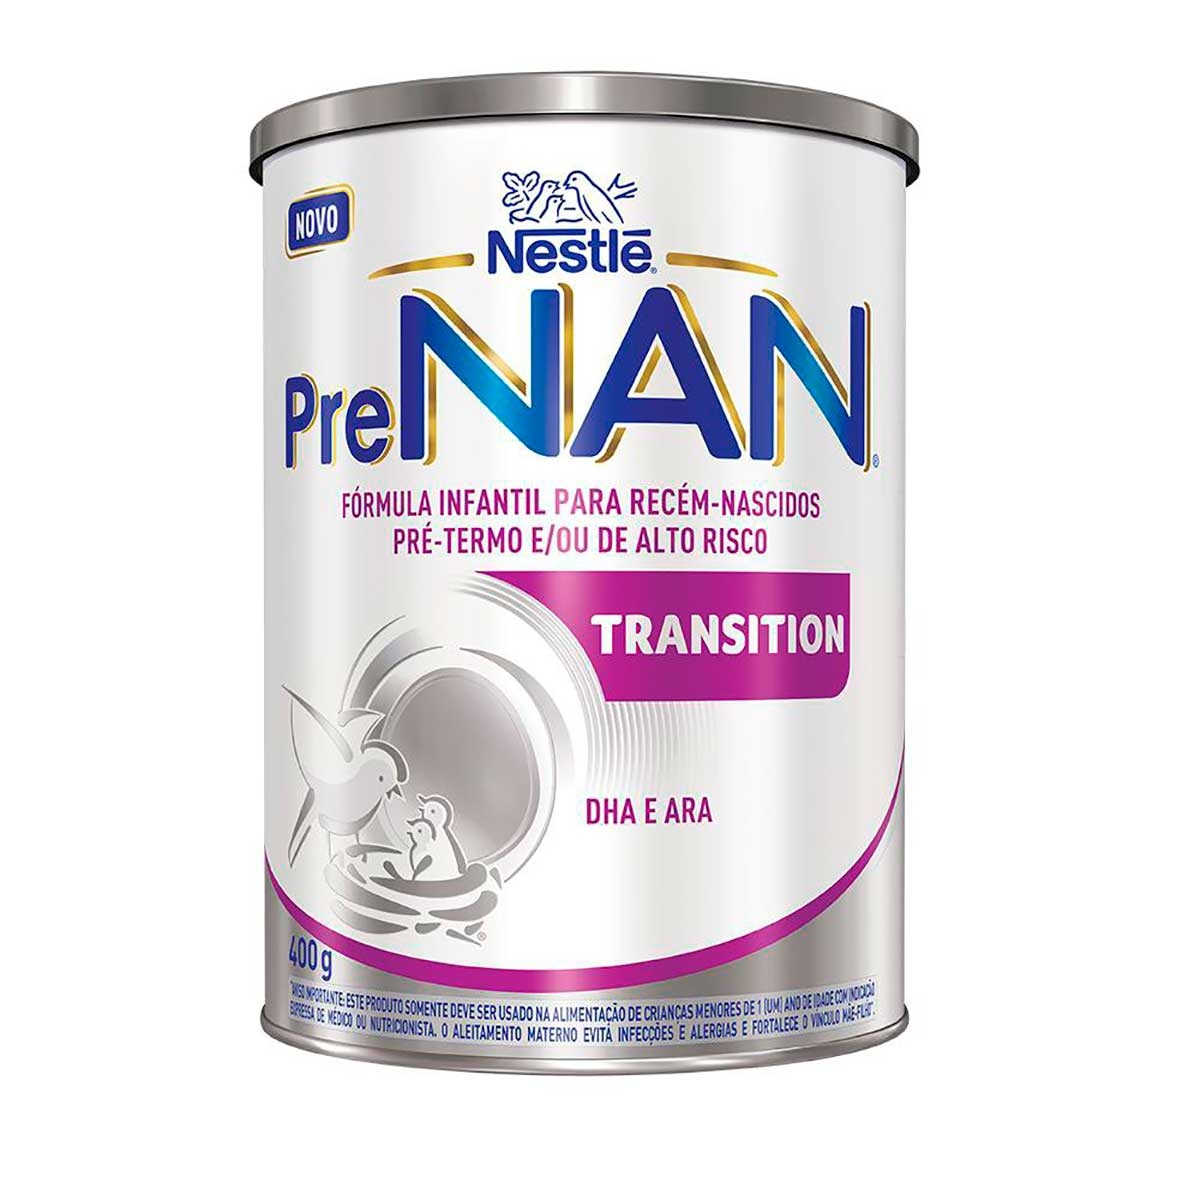 Nestlé Nan Supreme 1 400 g